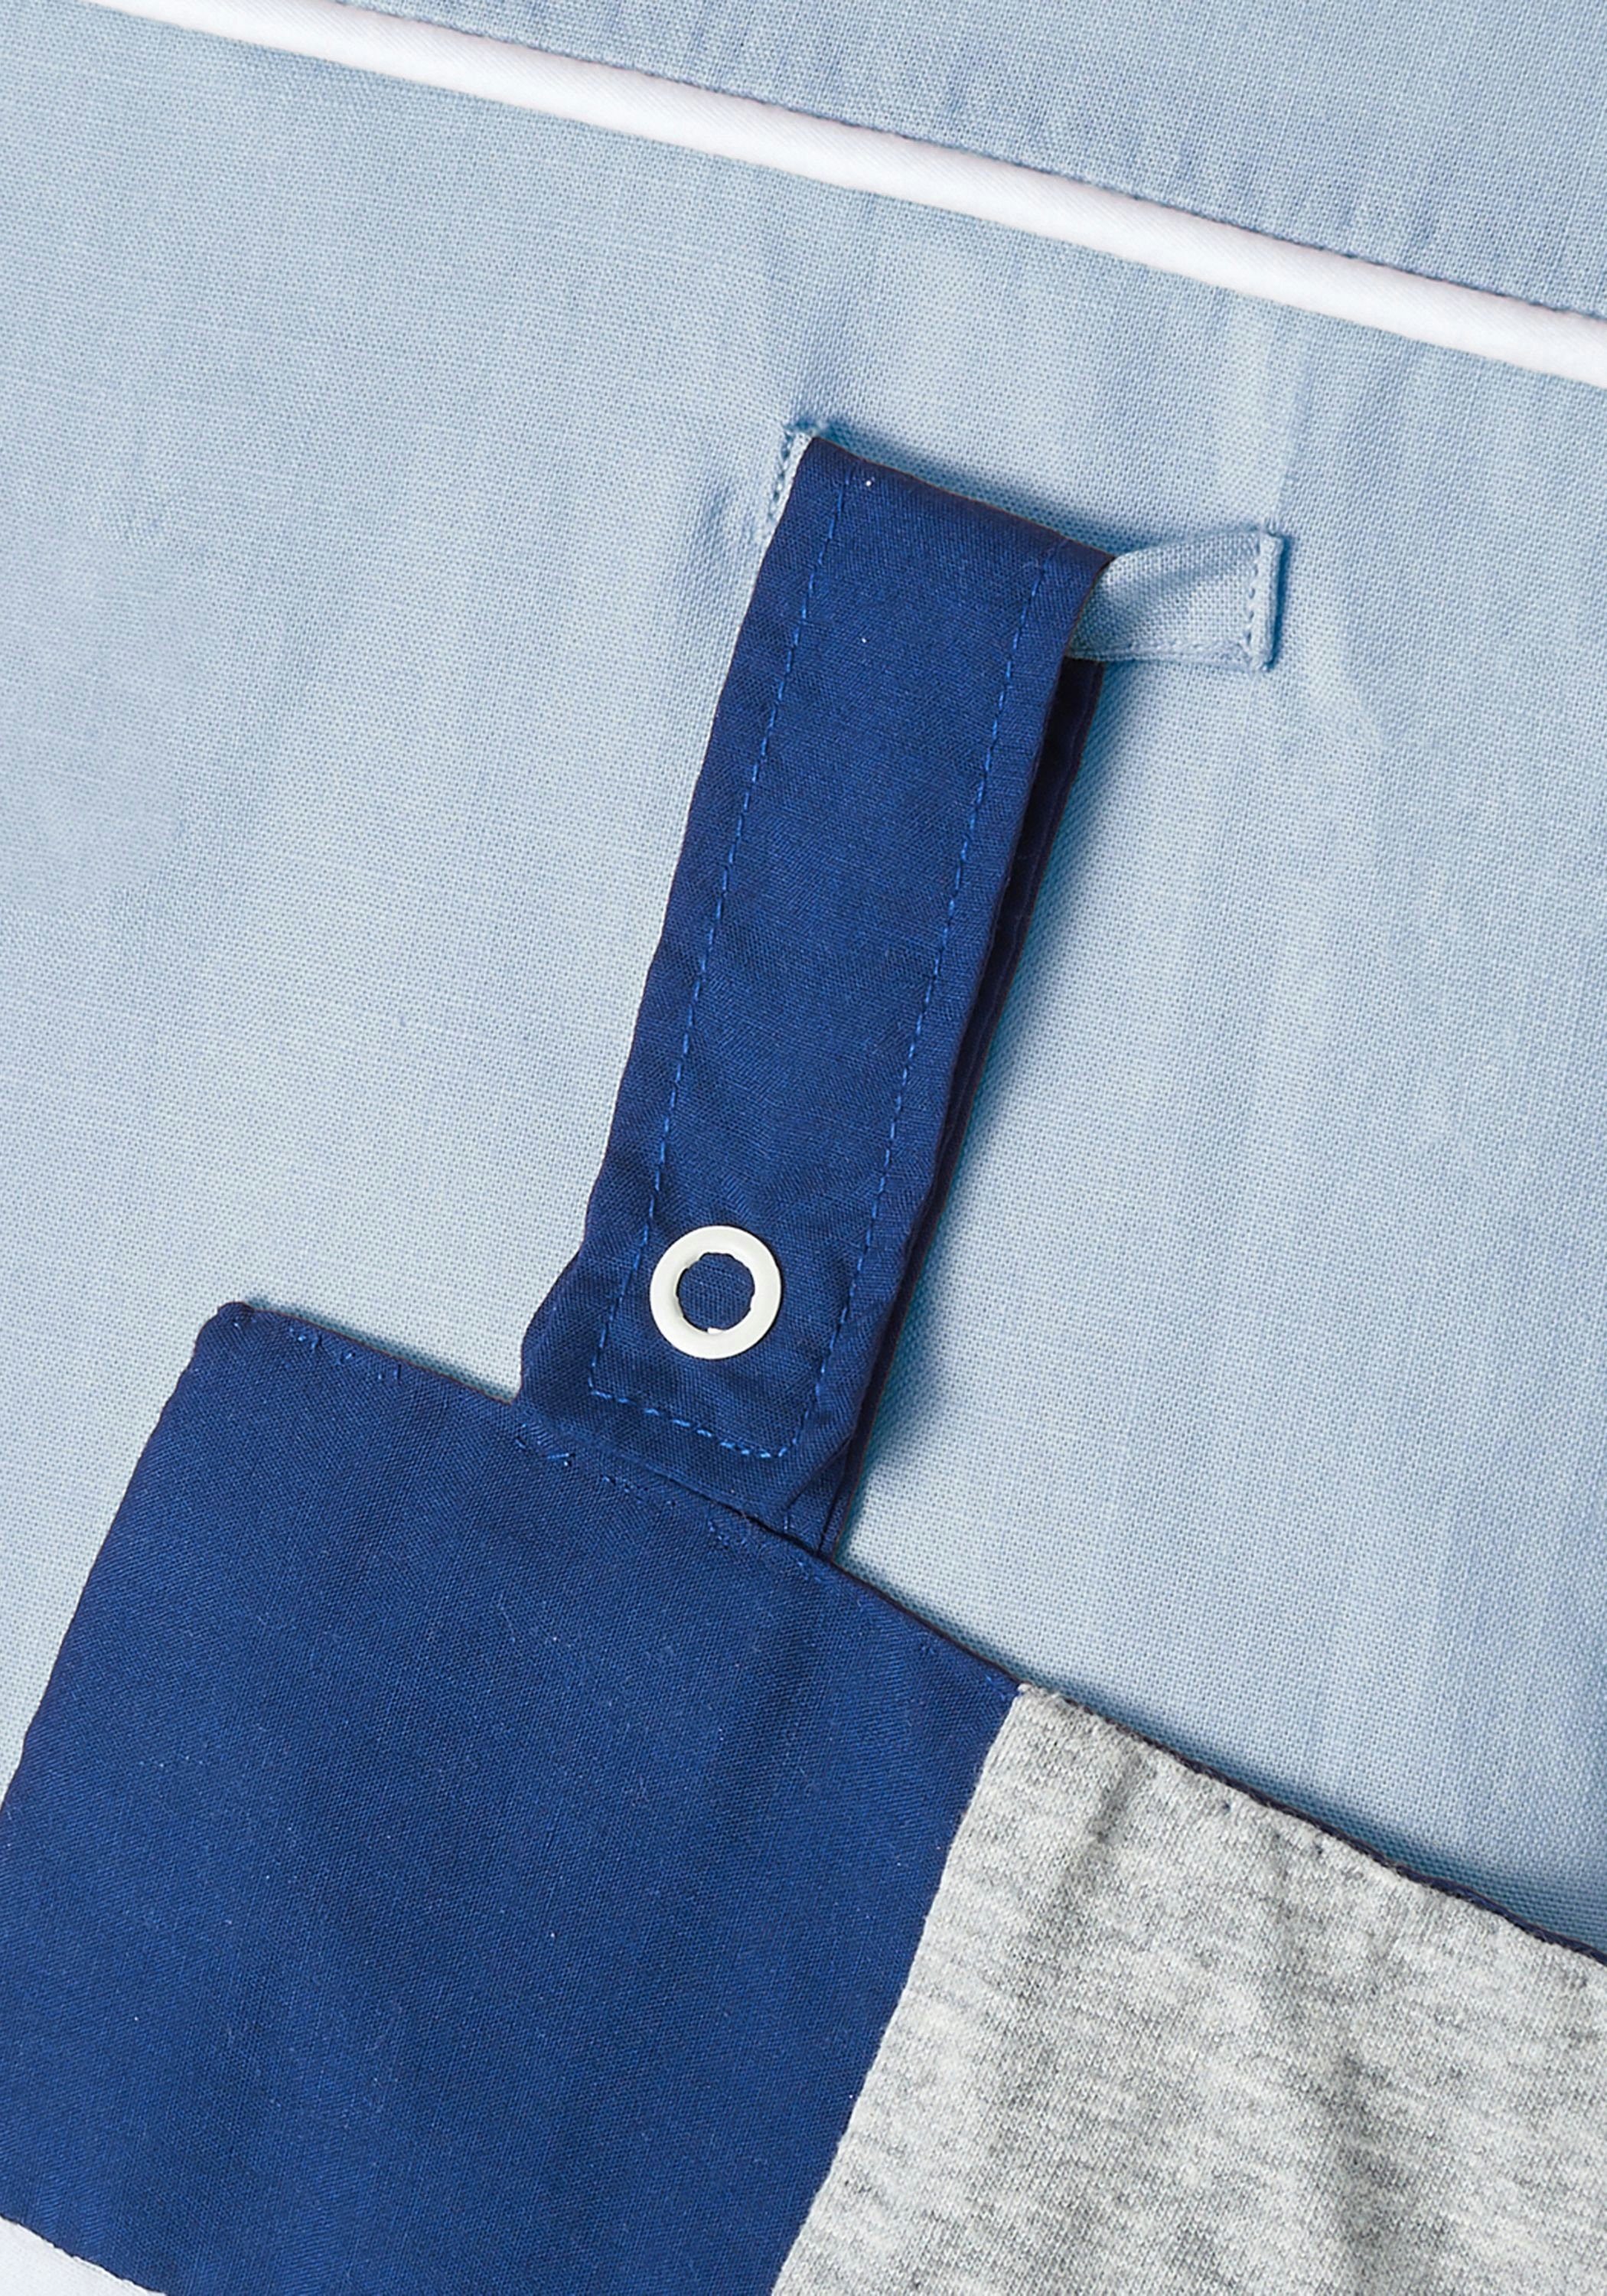 Baumwolle cm] 100% Baby Grau Nordic Wickelunterlage Wickelauflage, Blau Handtuch Wechselbares [70x80 Wickelauflage Coast Wickeltischauflage Company zertifizierte